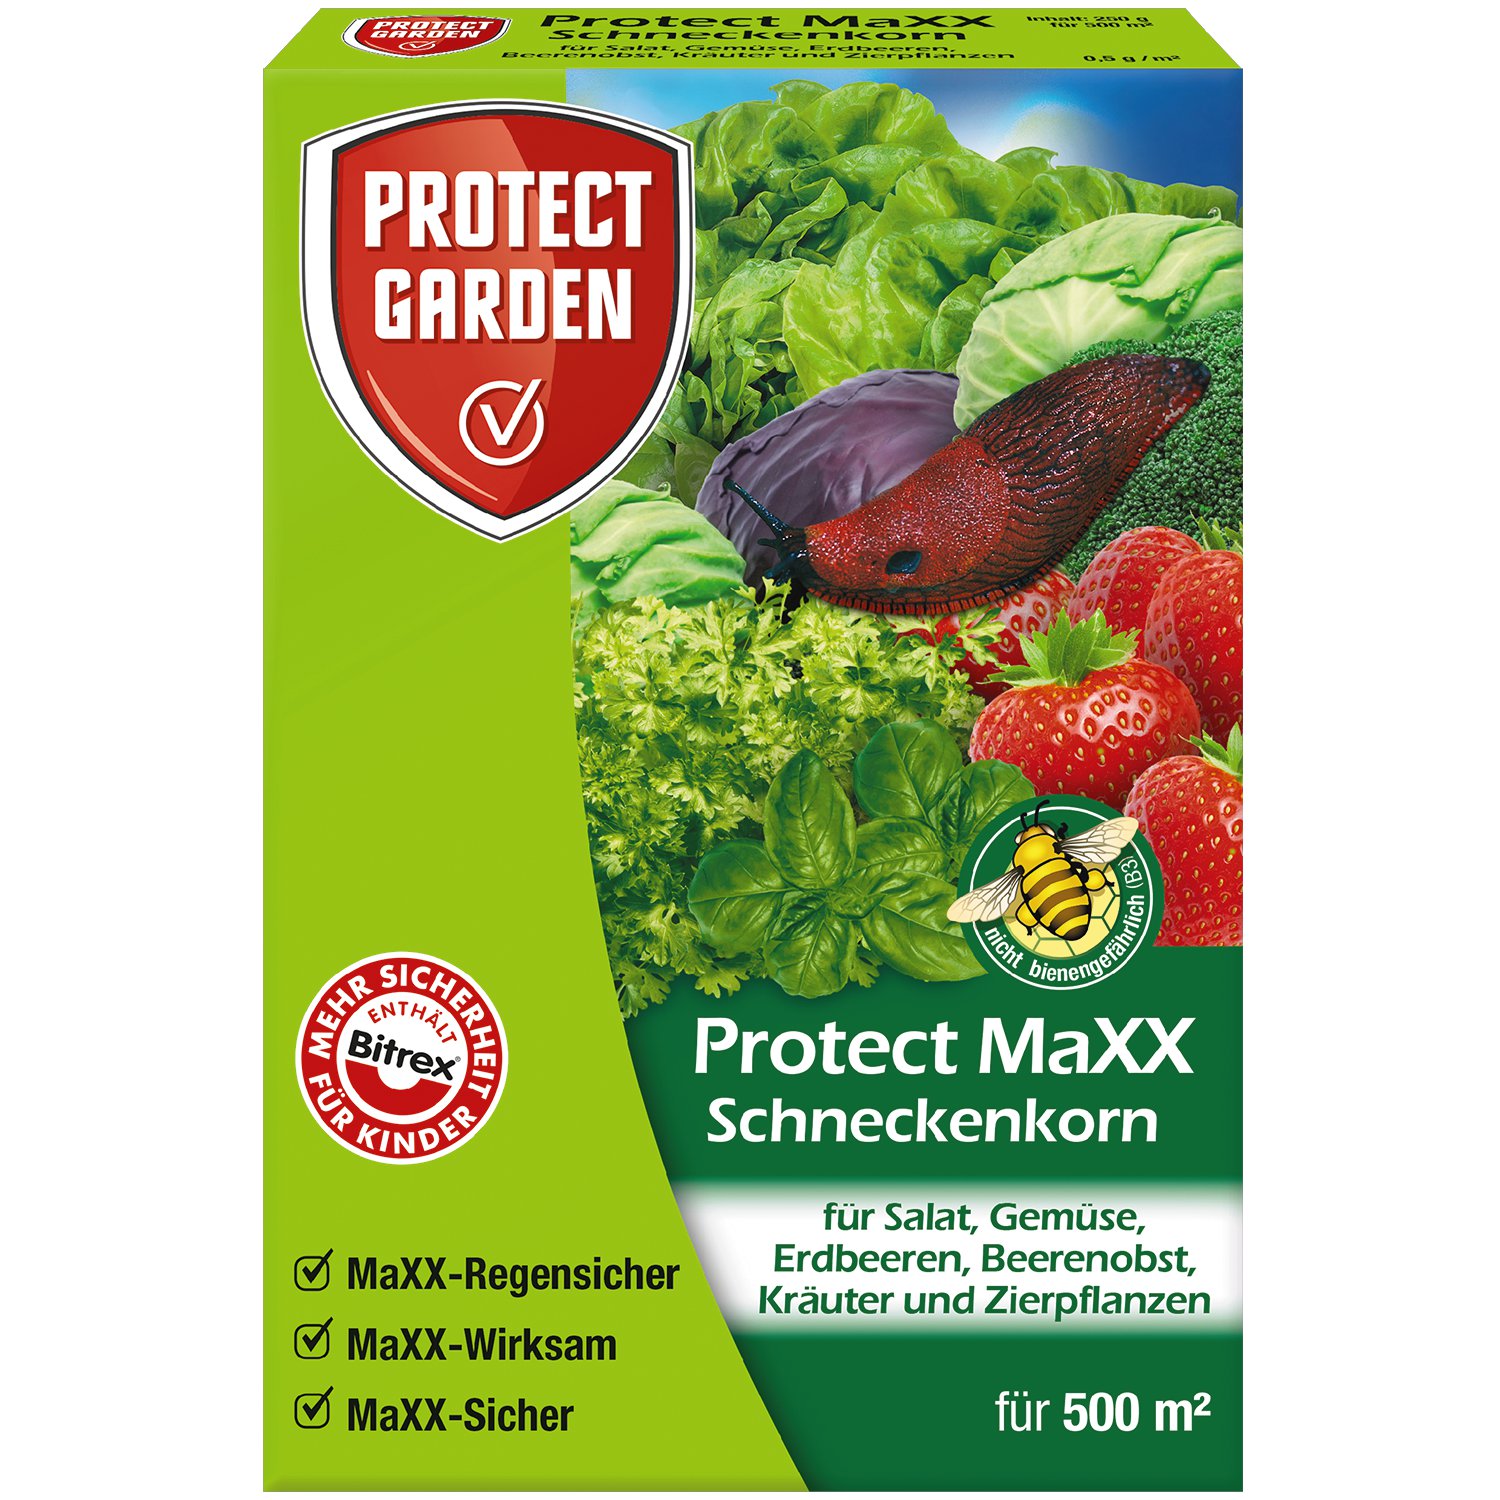 PROTECT GARDEN Schneckenkorn Protect Maxx 250 g